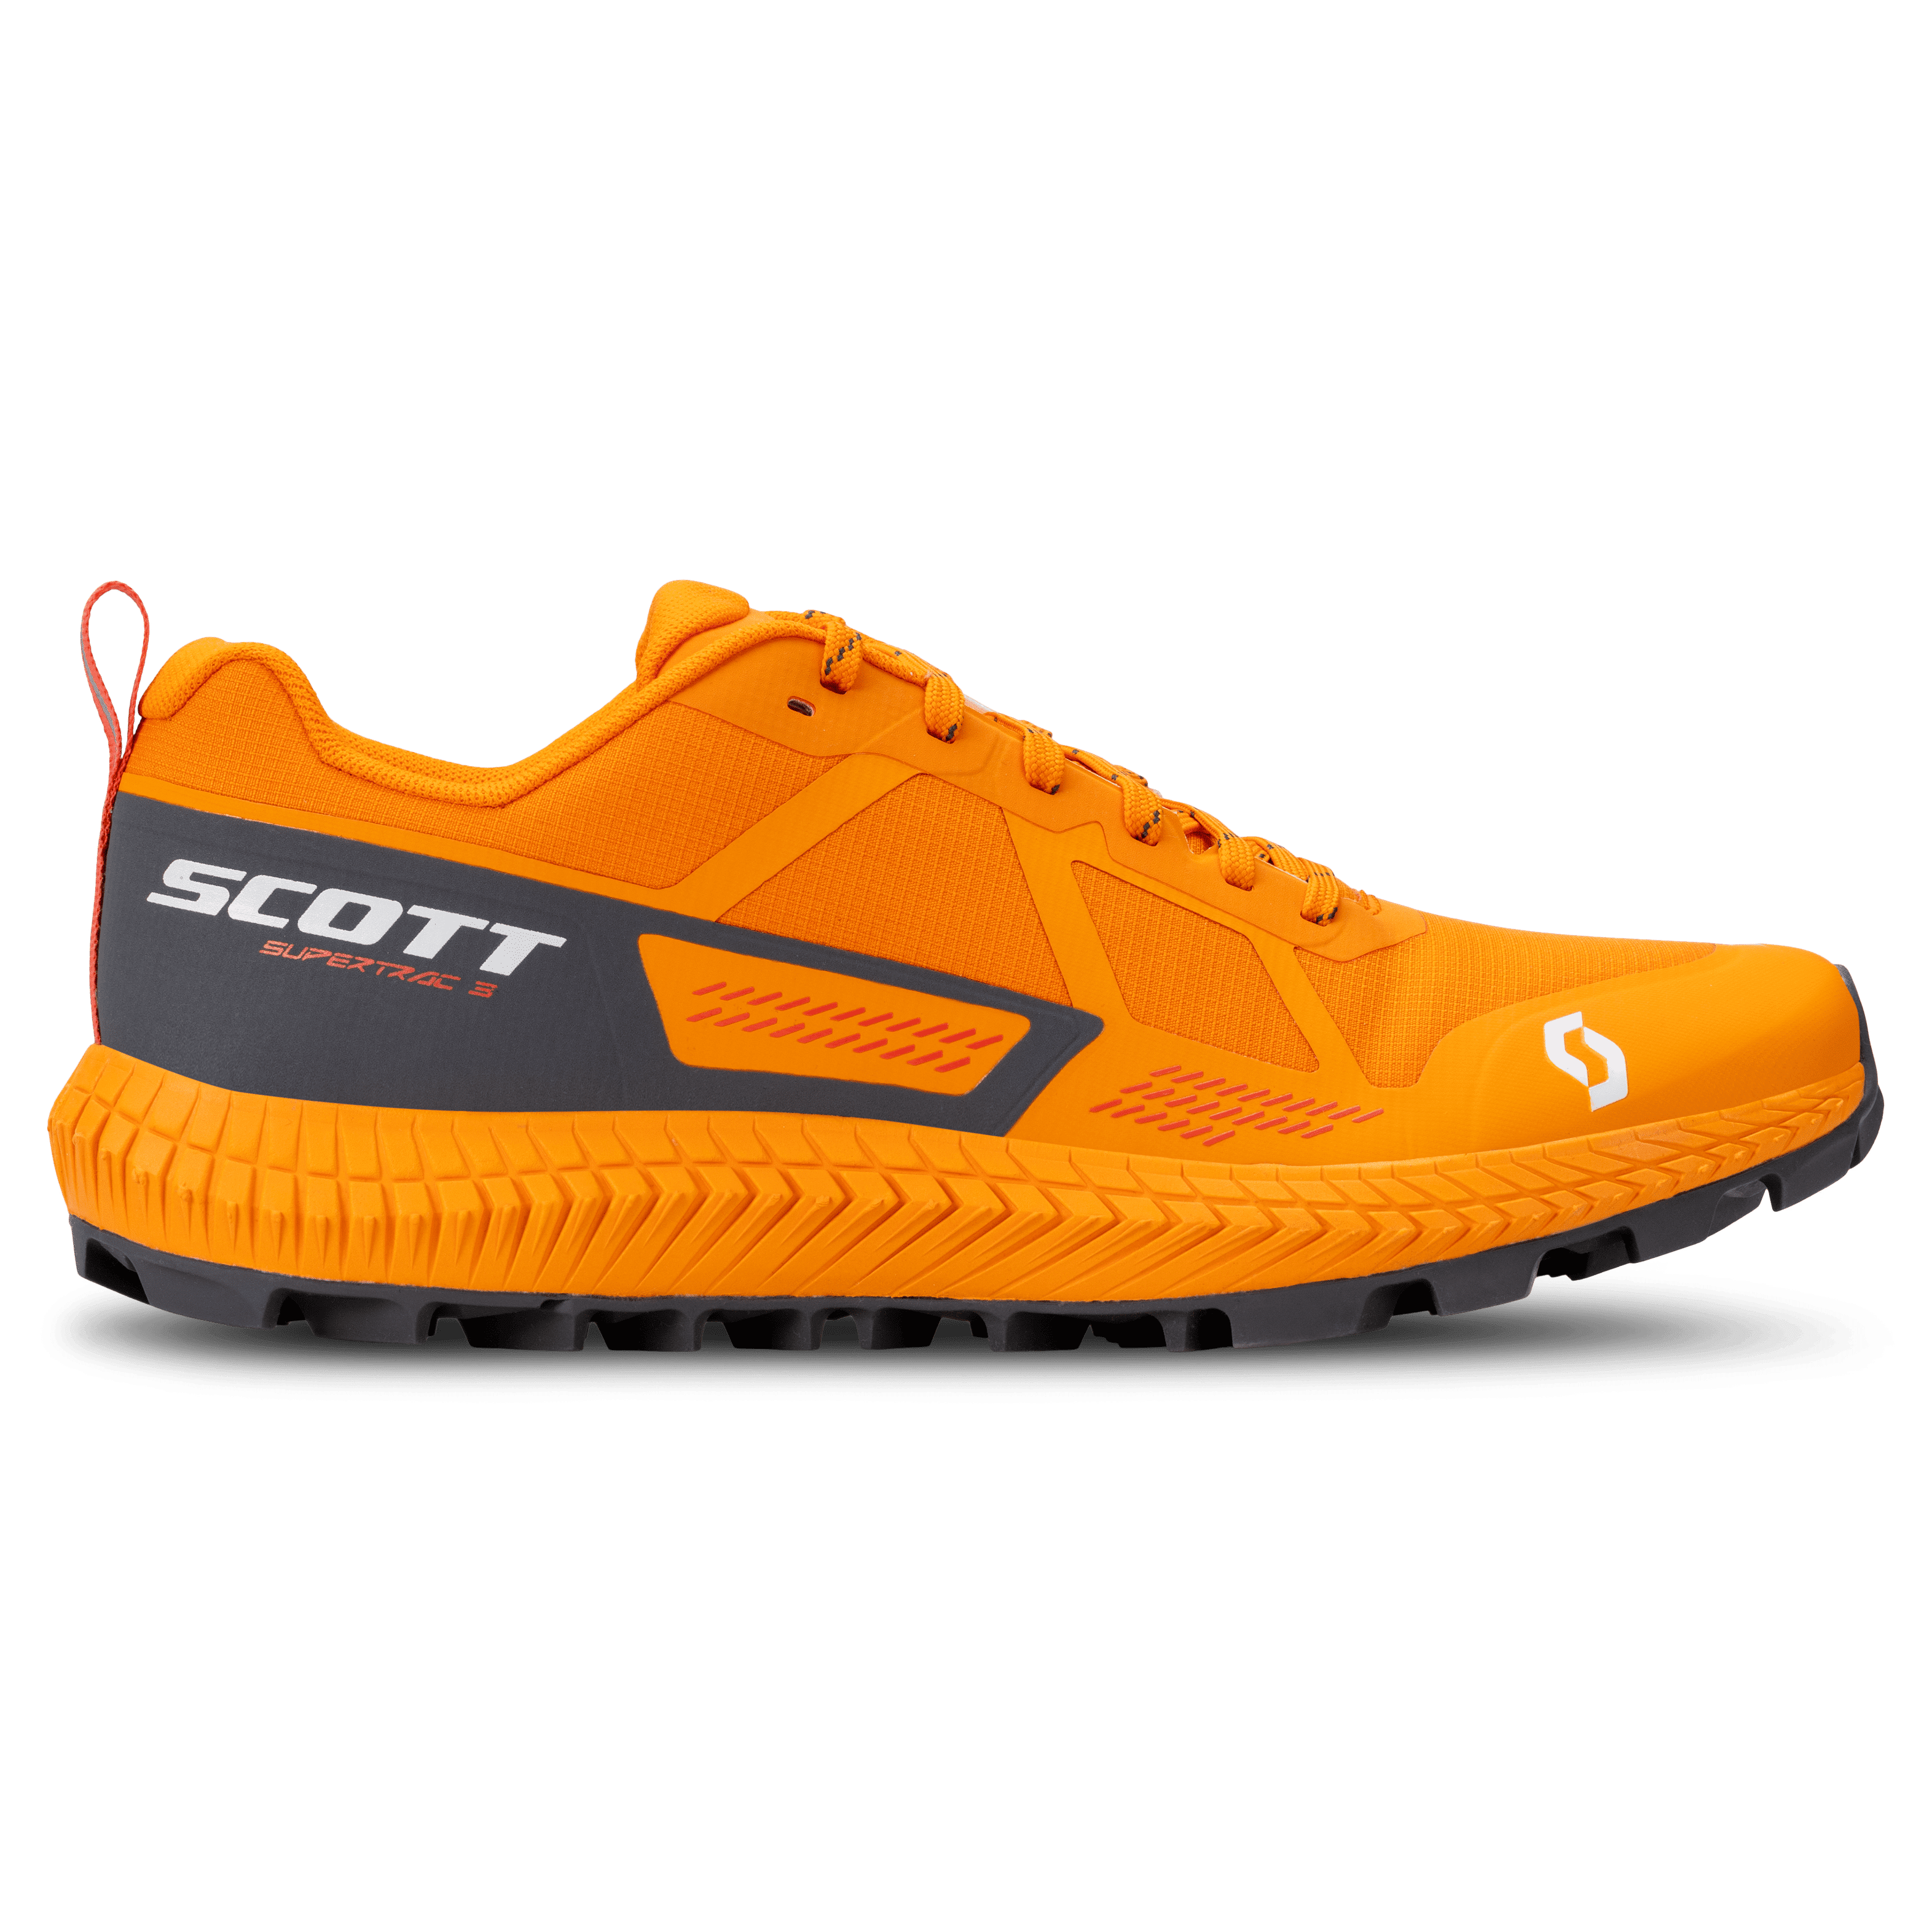 Scott Supertrac 3.0 - Scarpe da trail running - Uomo